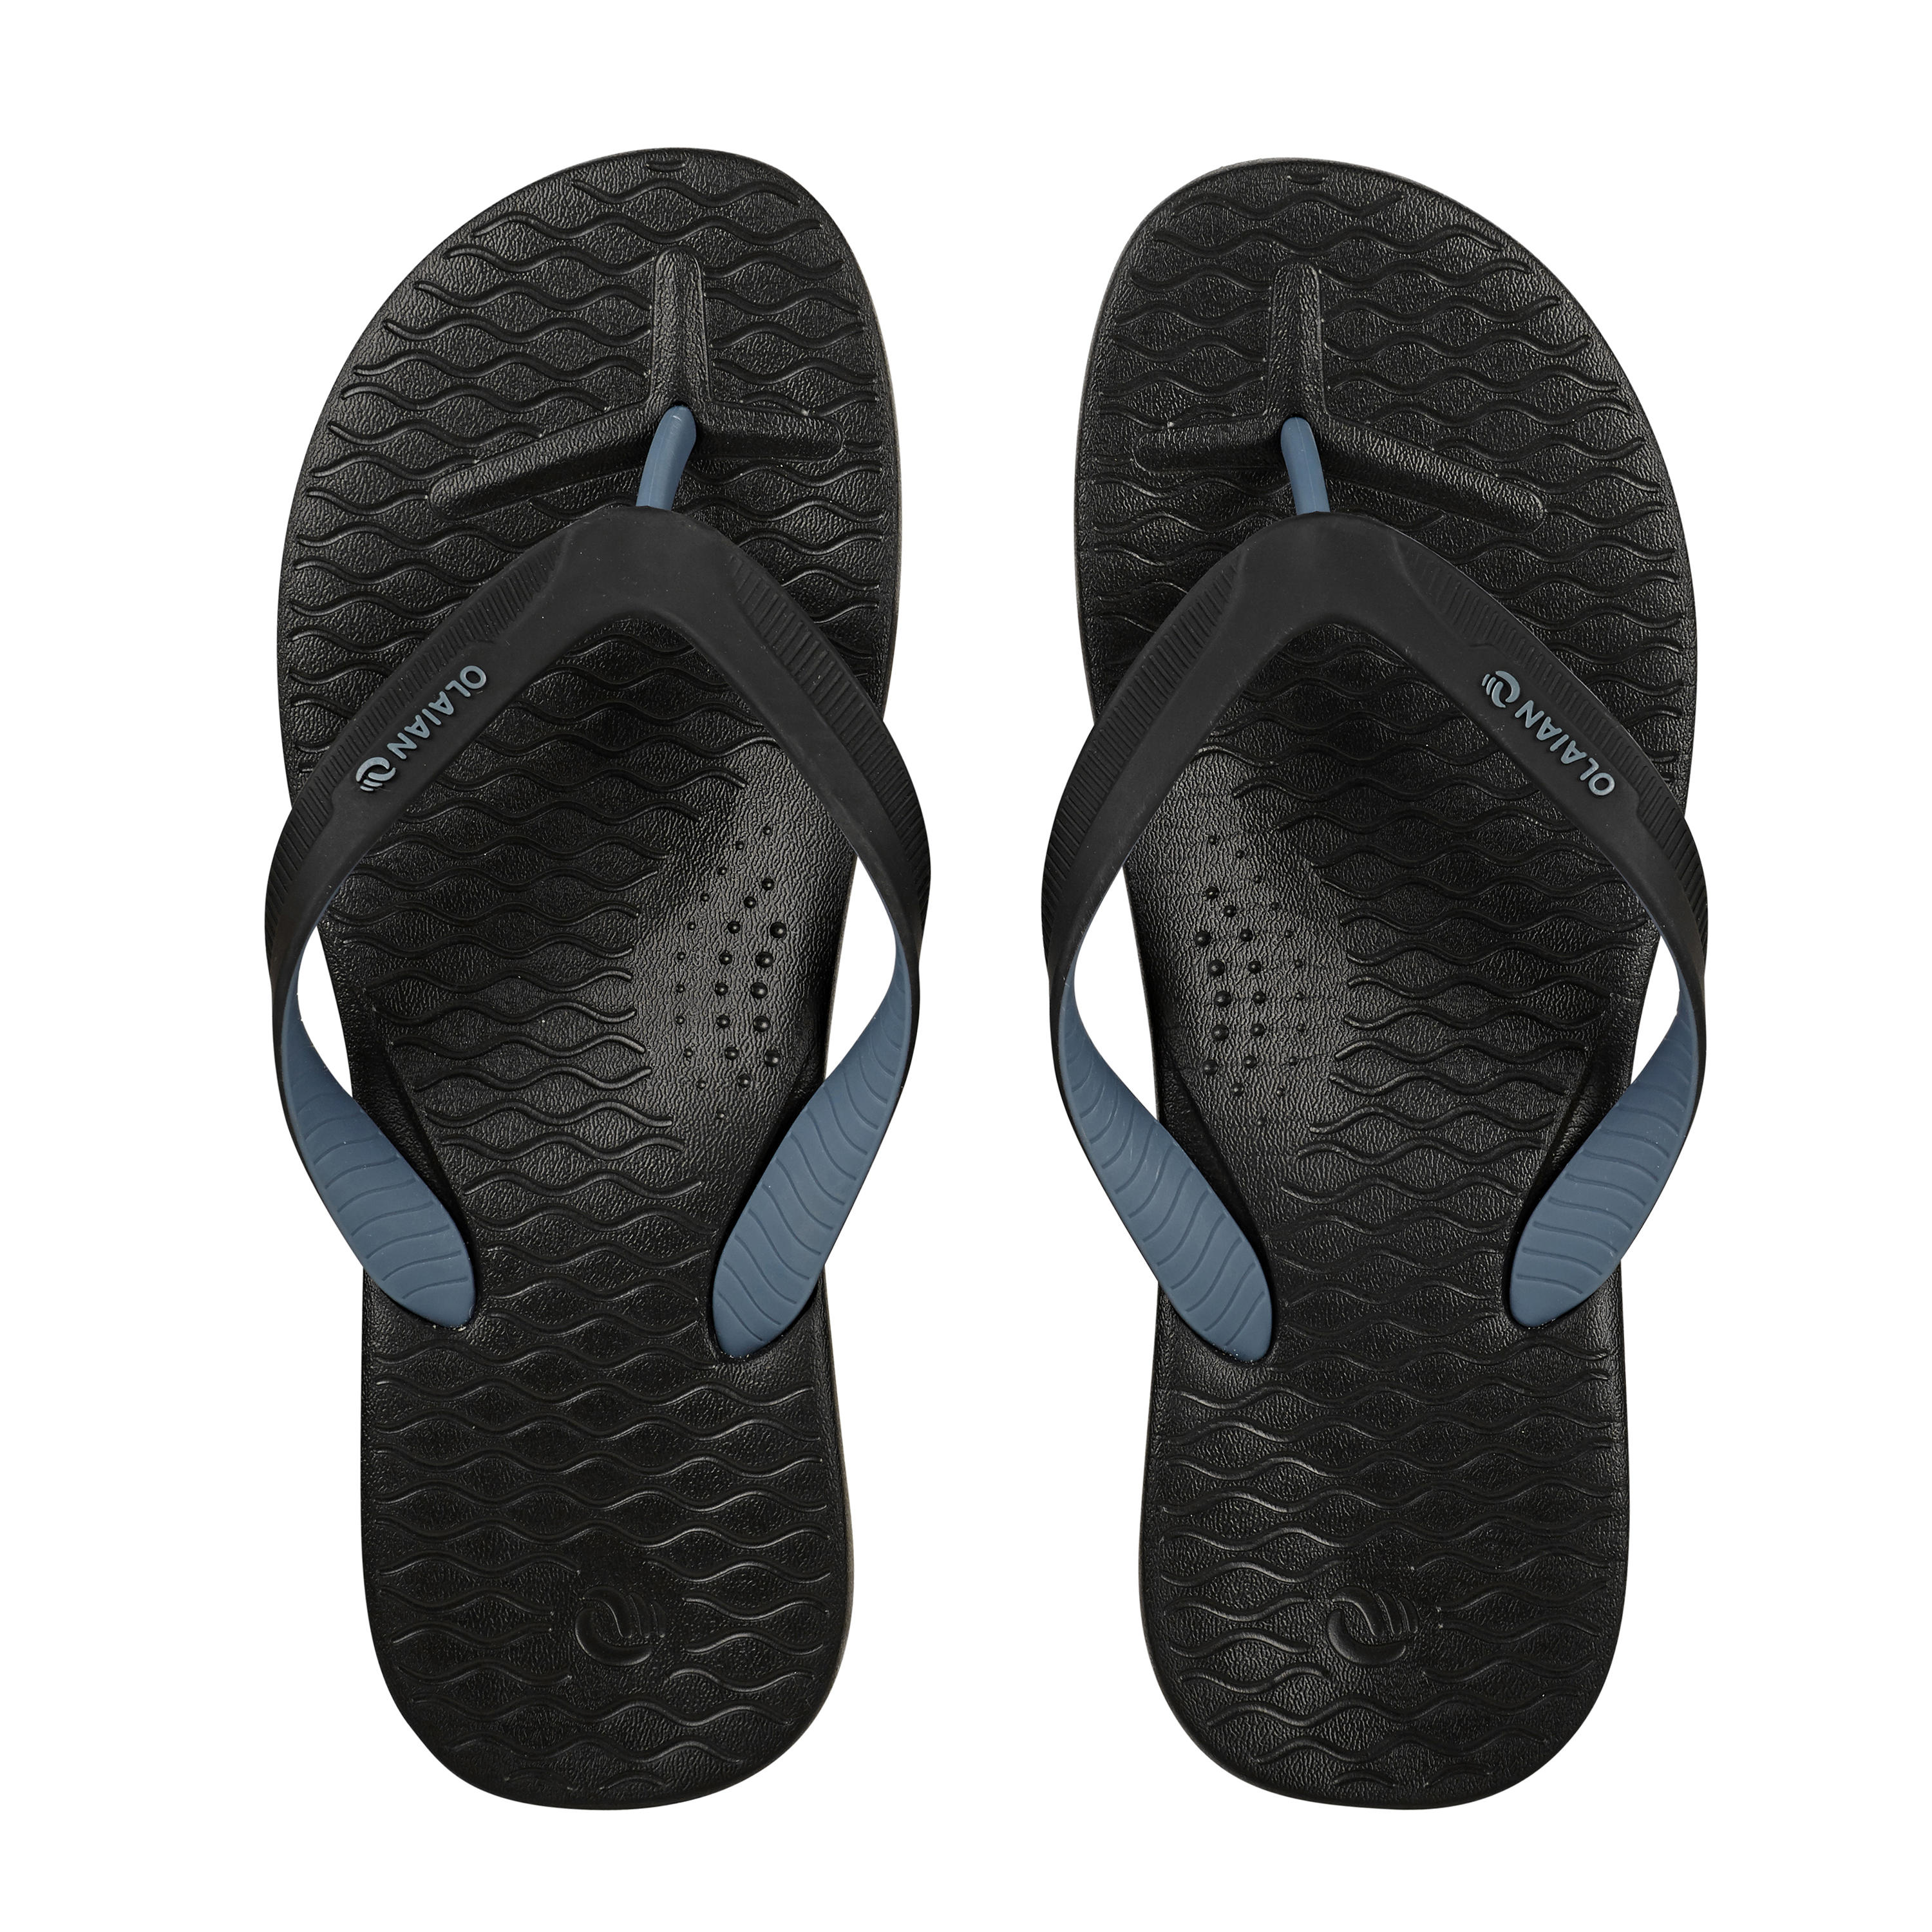 Flip Flops \u0026 Sandals | Decathlon Hong Kong